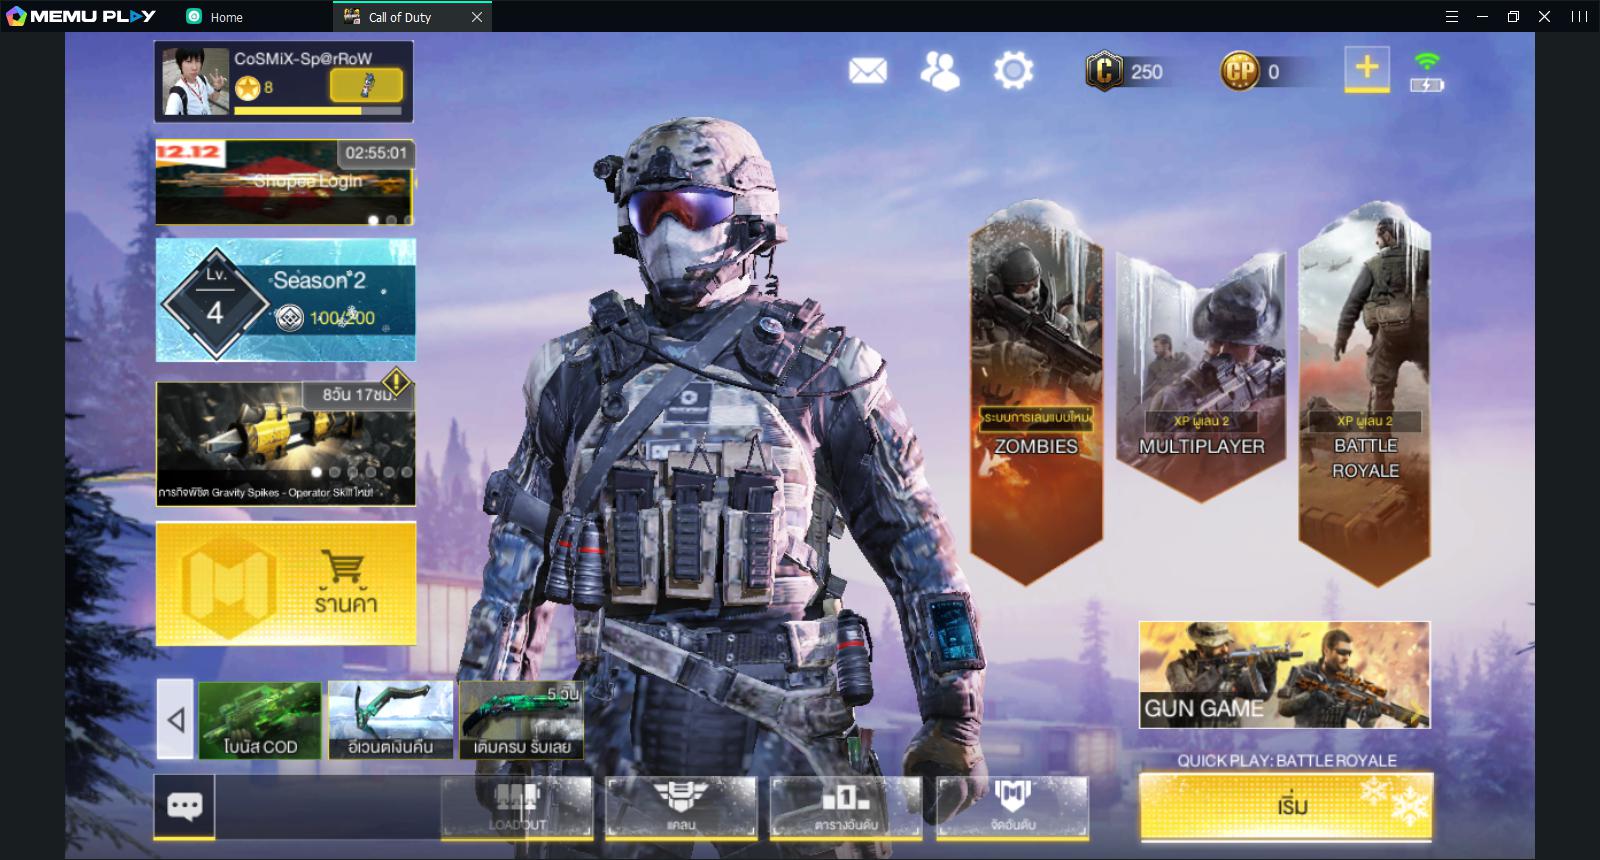 เล น Call Of Duty Mobile บนคอมพ วเตอร ด วย Memu ท รองร บ Smart Keymapping Memu Blog - gyn shop discord ร านขายของในเกมส roblox youtube